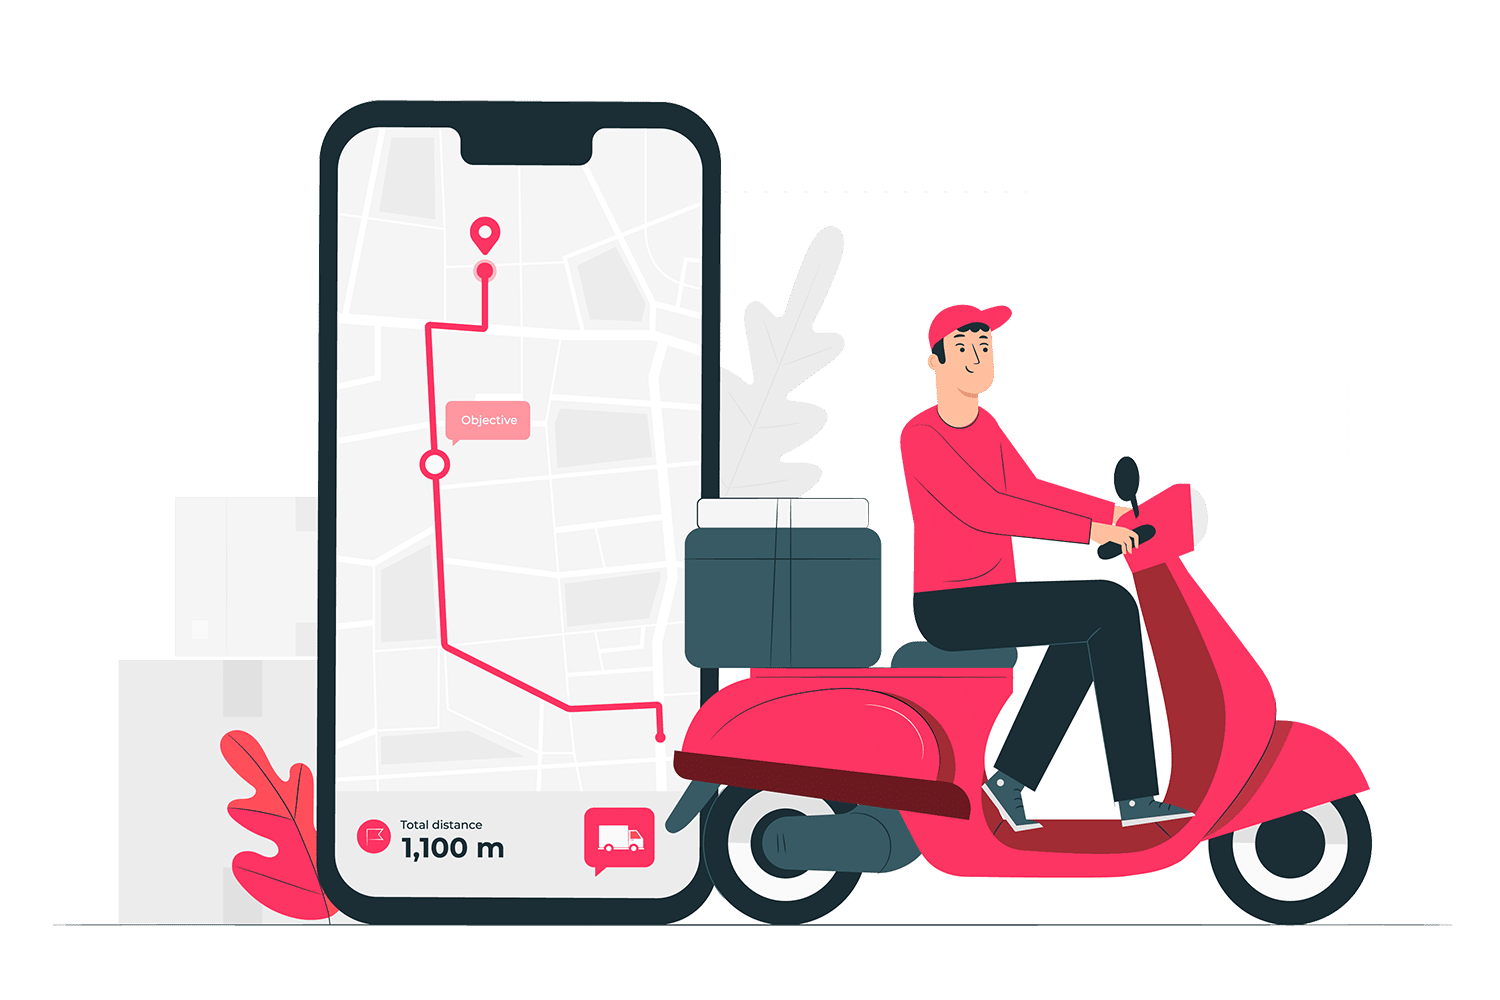 וקטור שליח על קטנוע עם אפליקציה לניהול משלוחים